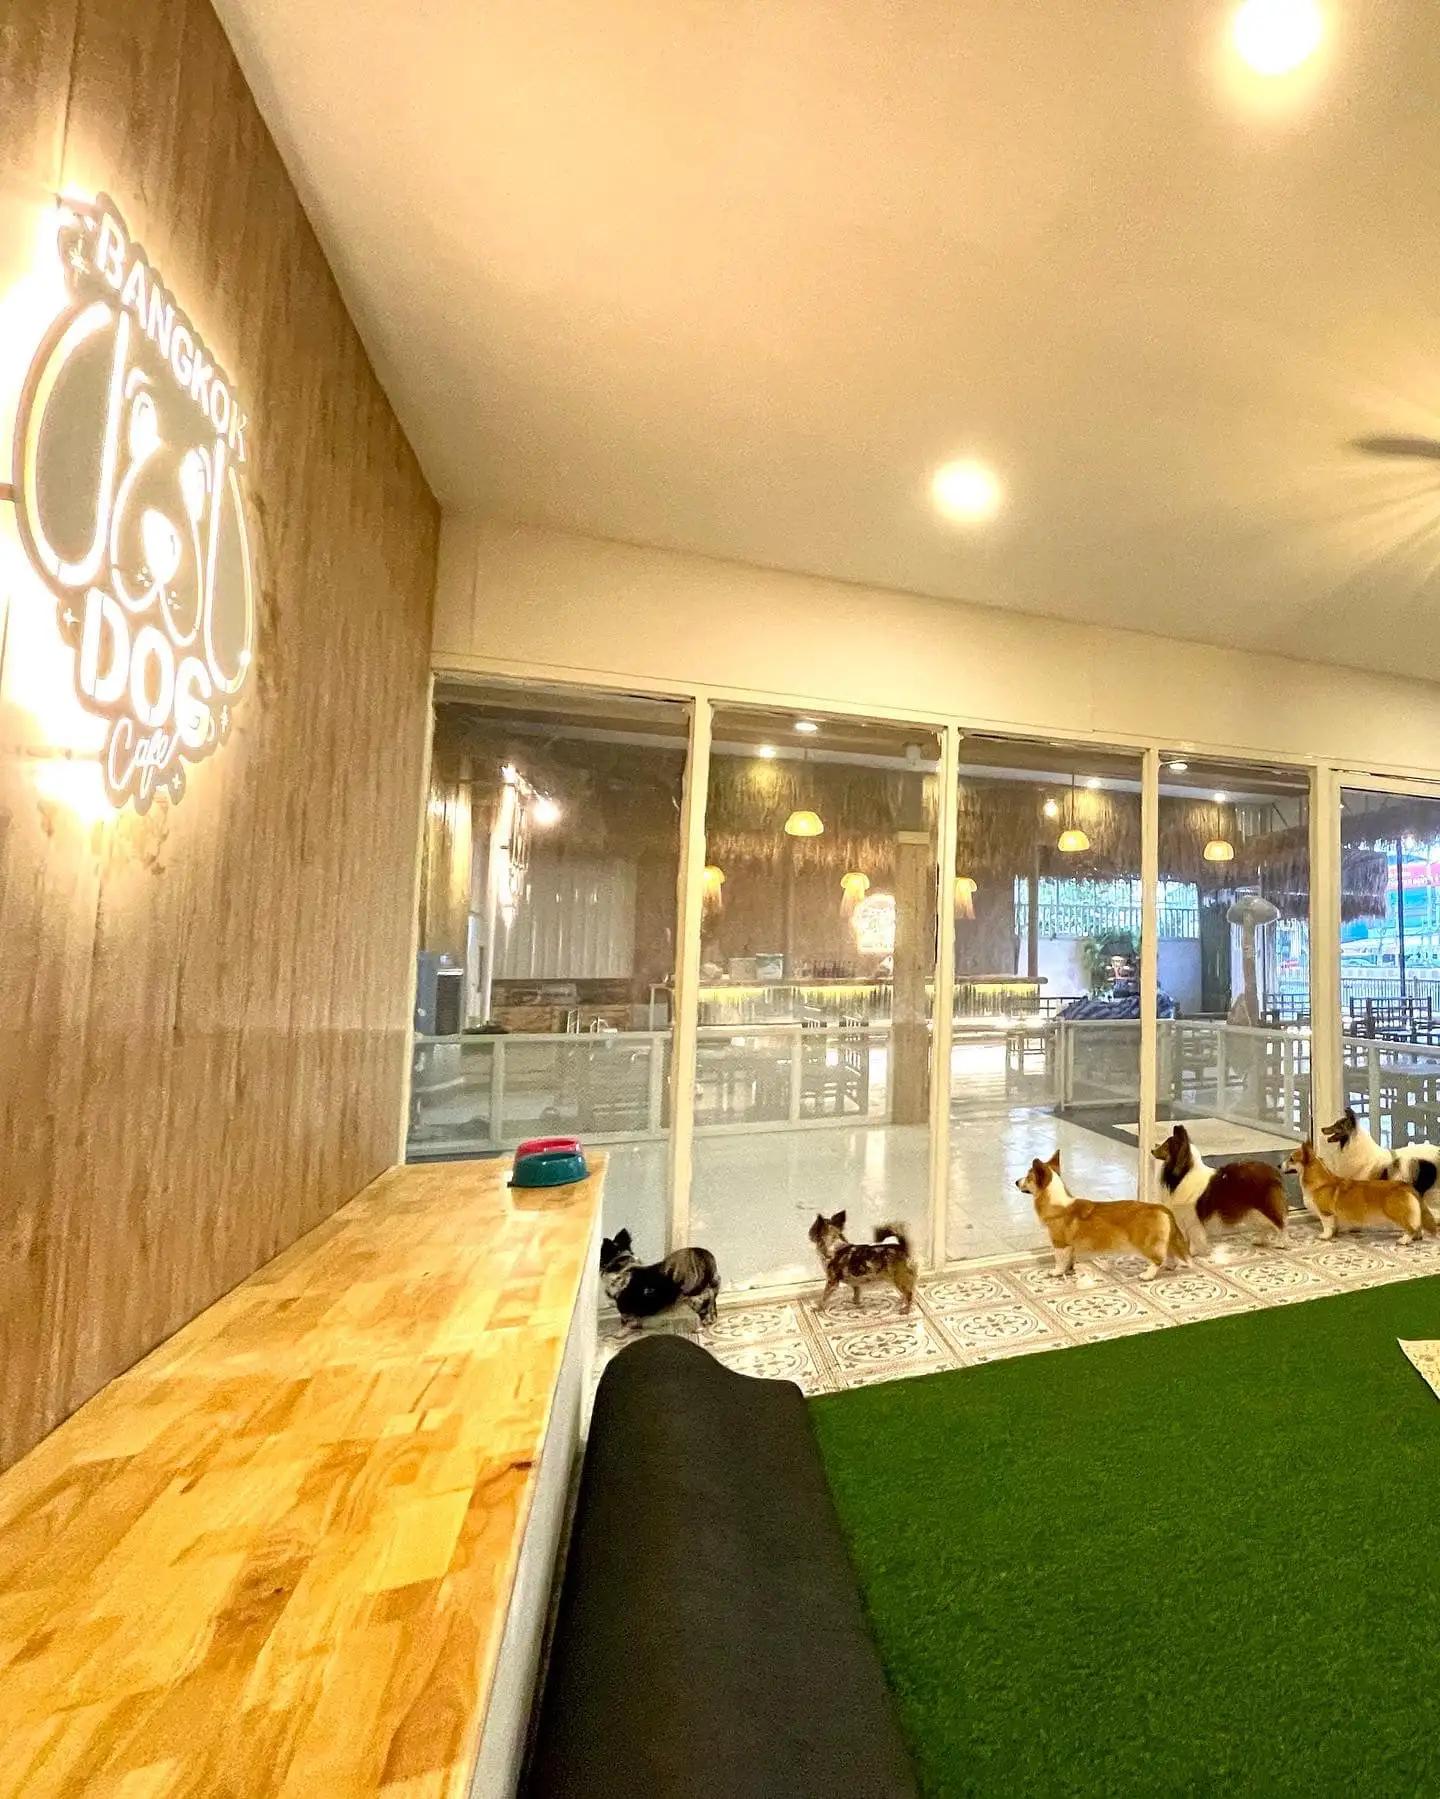 Bangkok Dog Cafe - คาเฟ่ฟาร์มหมา